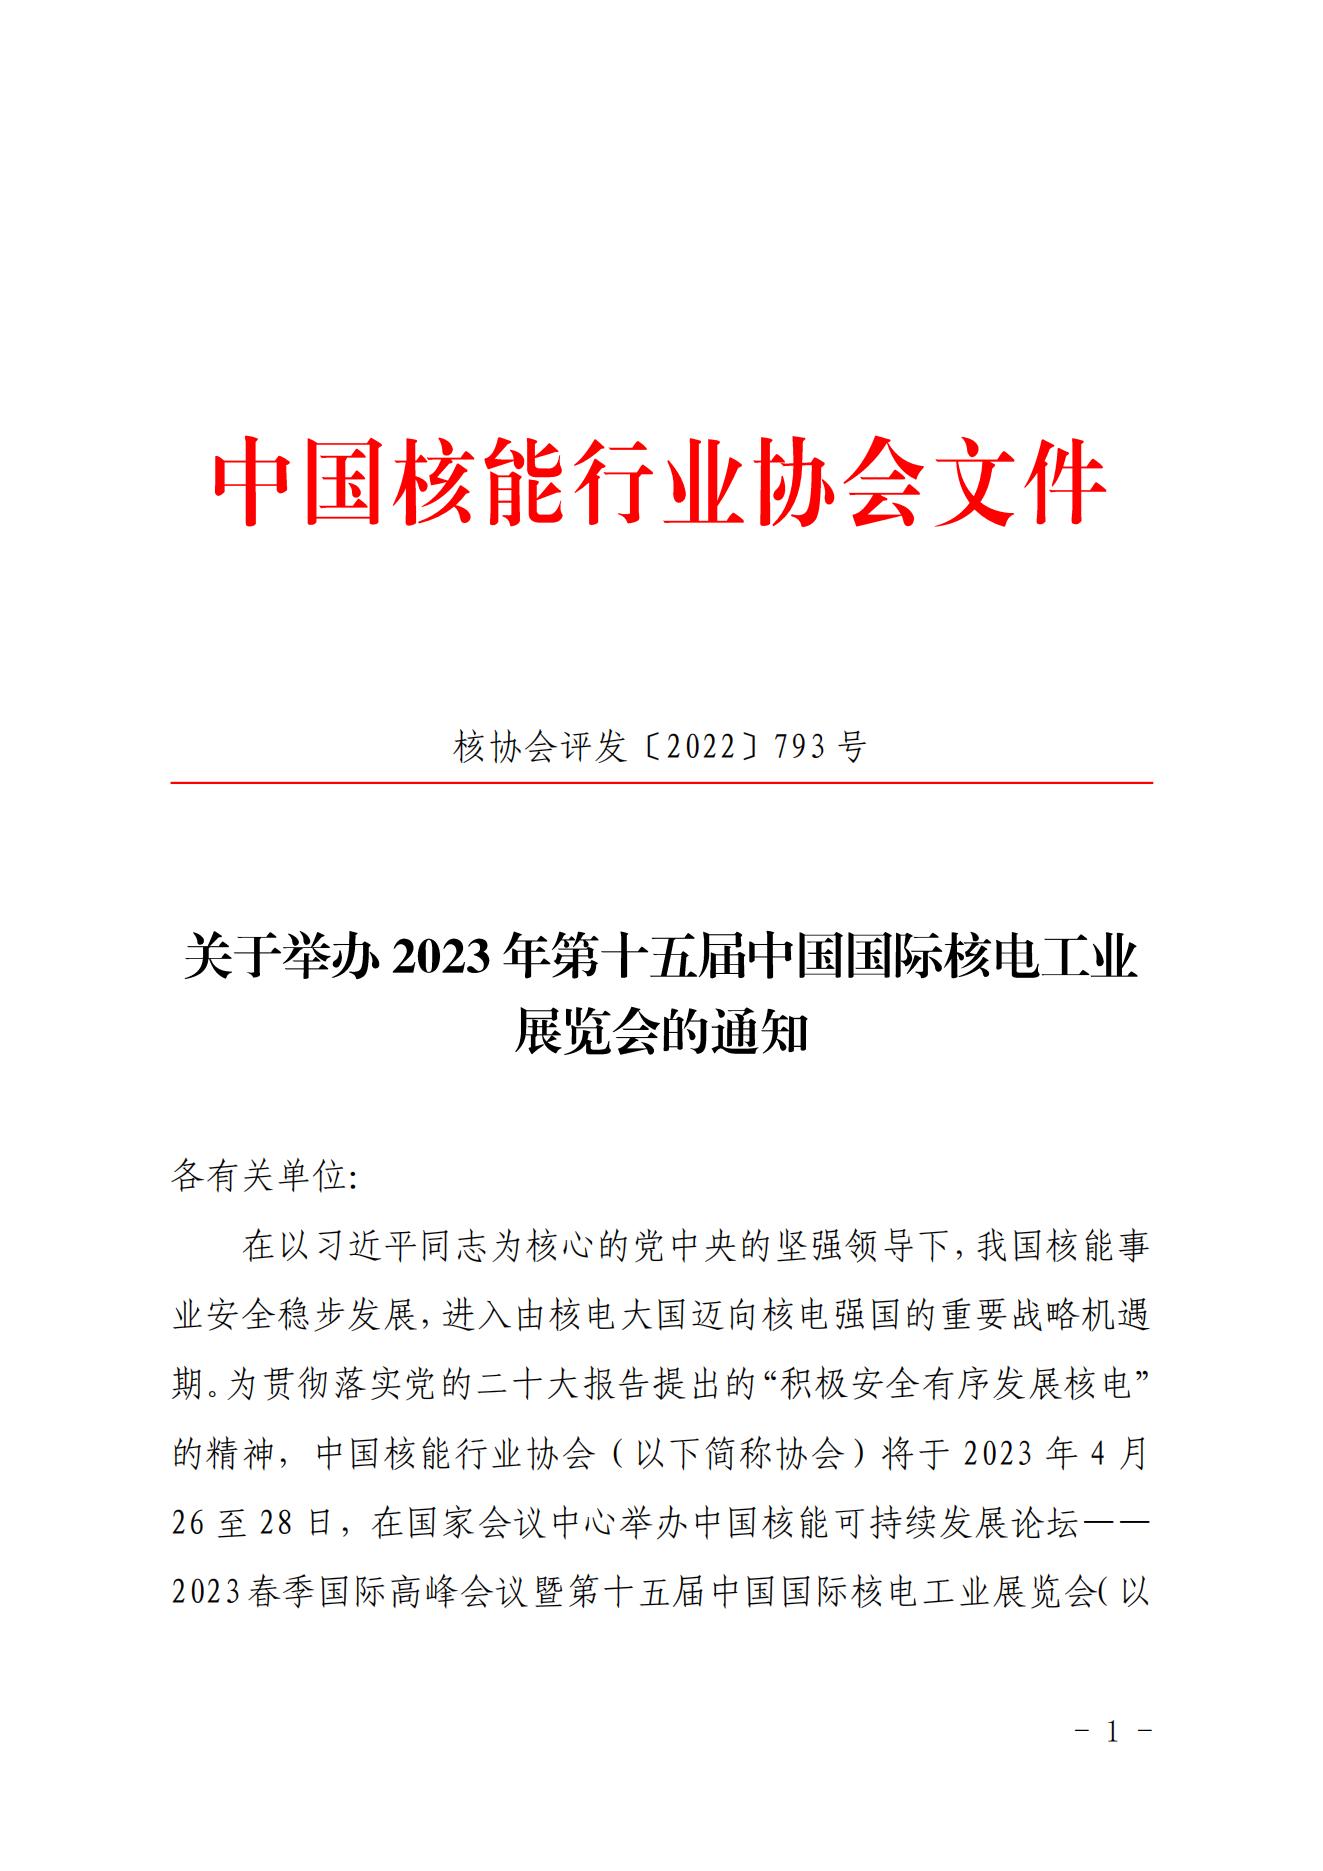 关于举办2023年第十五届中国国际核电工业展览会的通知_00.jpg